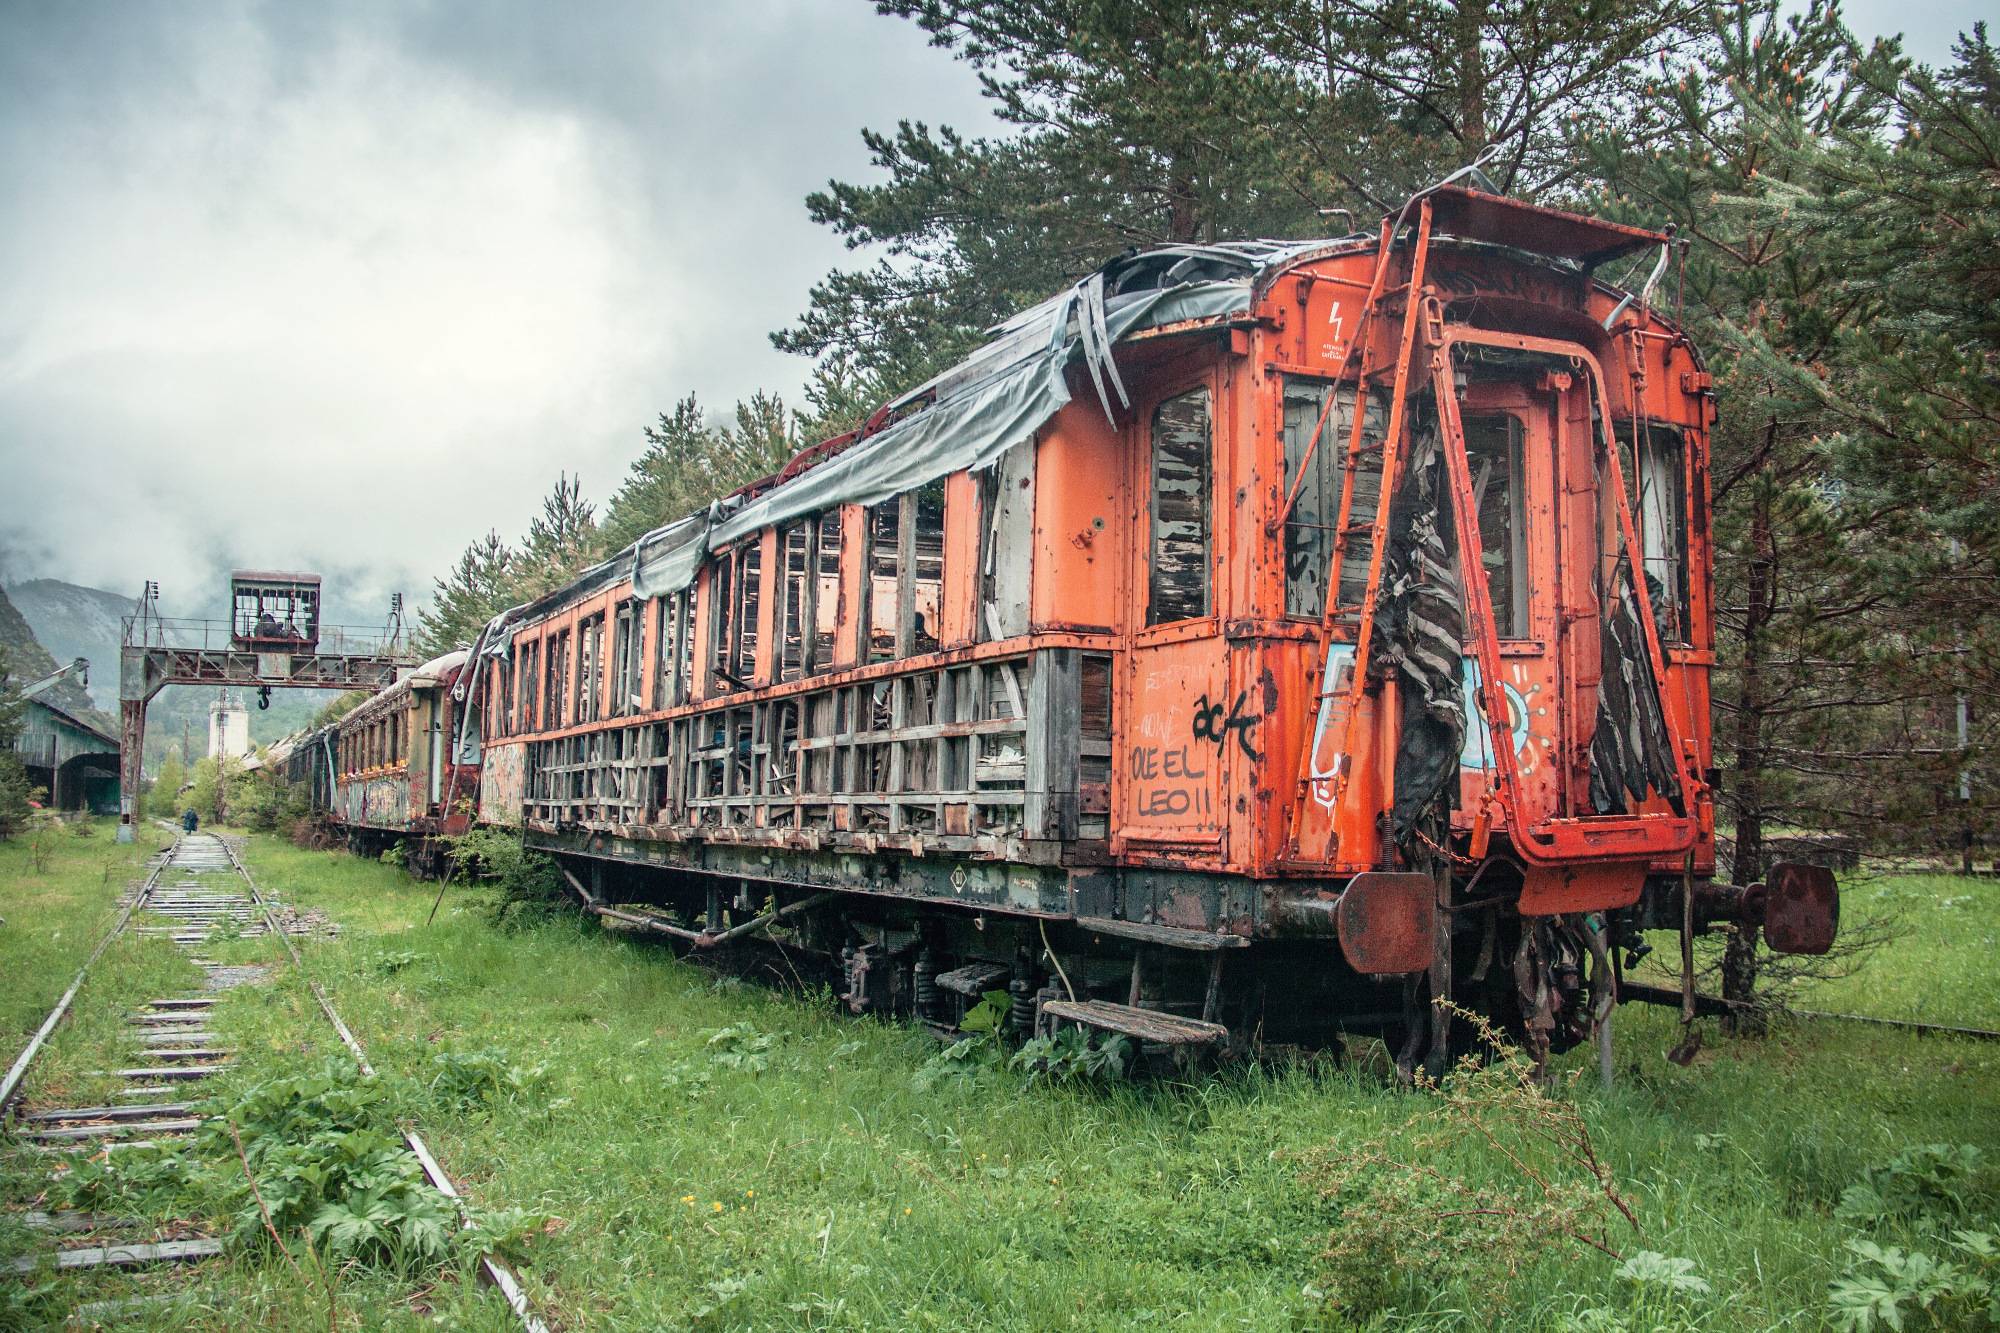 20 Most Amazing Abandoned Trains